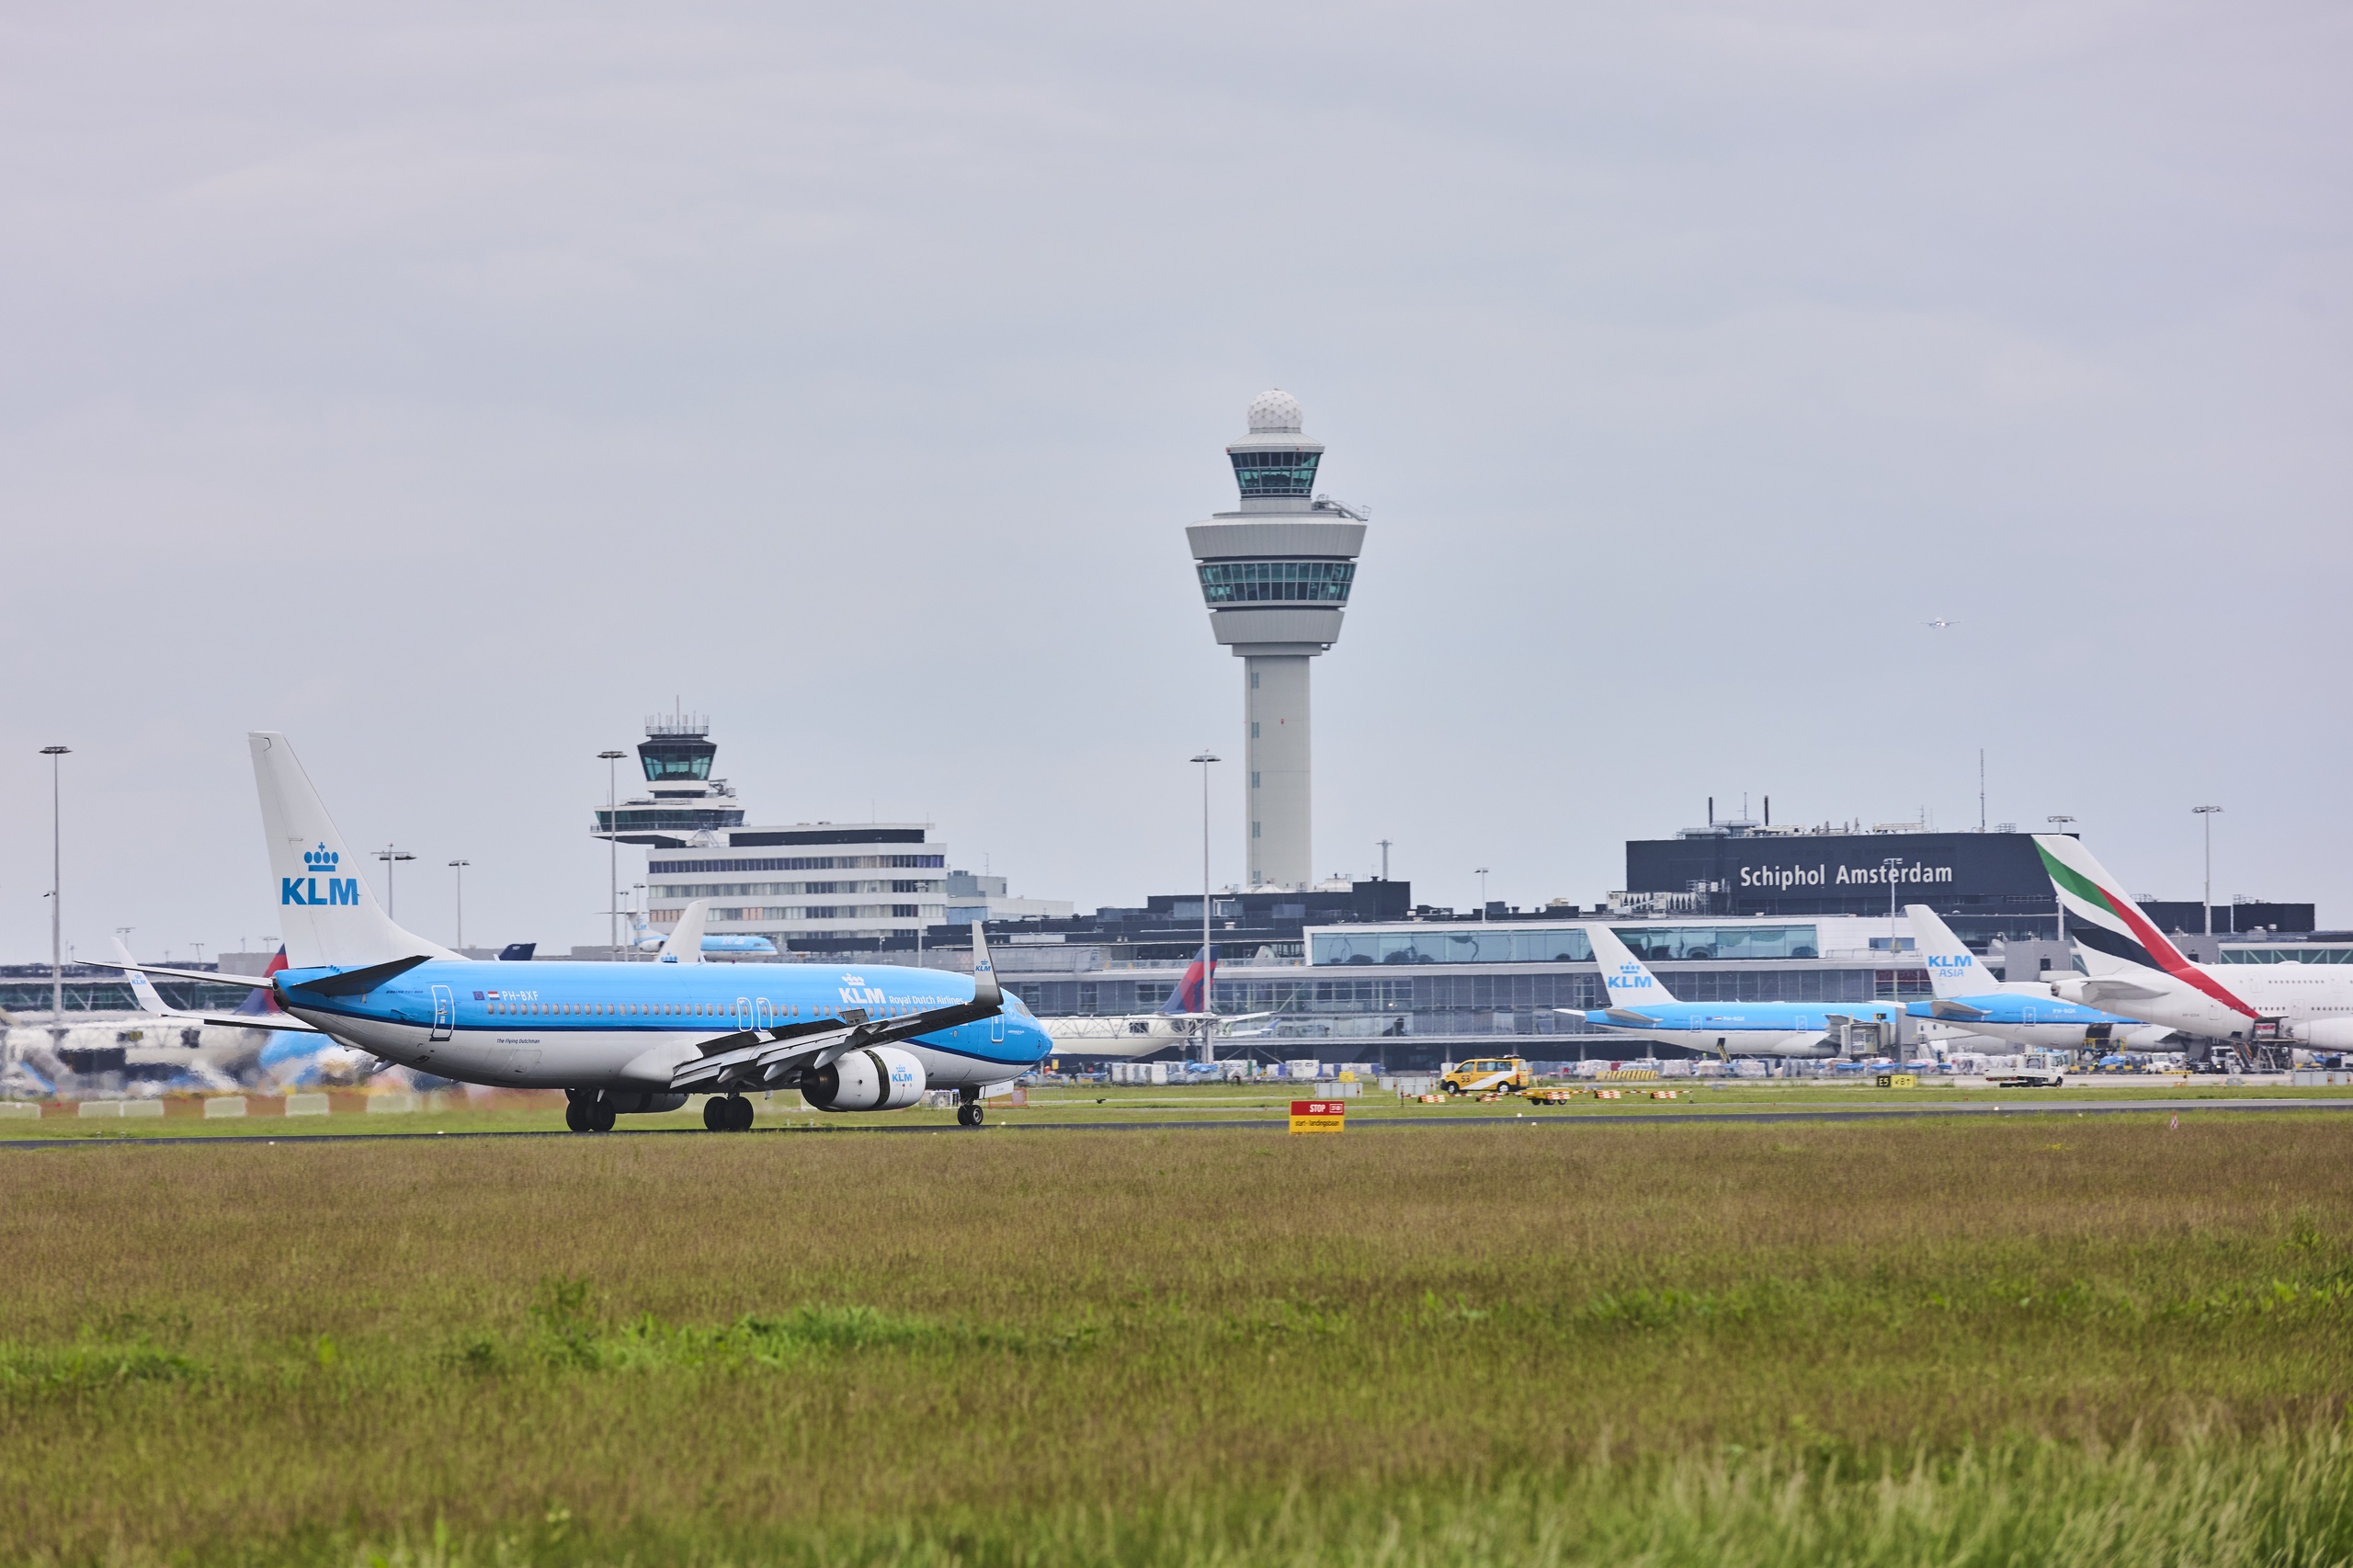 Volgens overheidscontroleur Jeroen Kremers heeft KLM zich niet aan de voorwaarden gehouden voor de staatssteun die het tijdens de coronacrisis ontving. Hij adviseert het kabinet om KLM voor de rechter te slepen en het naleven van de voorwaarden alsnog af te dwingen. Morgen wordt erover gedebatteerd in de Tweede Kamer.